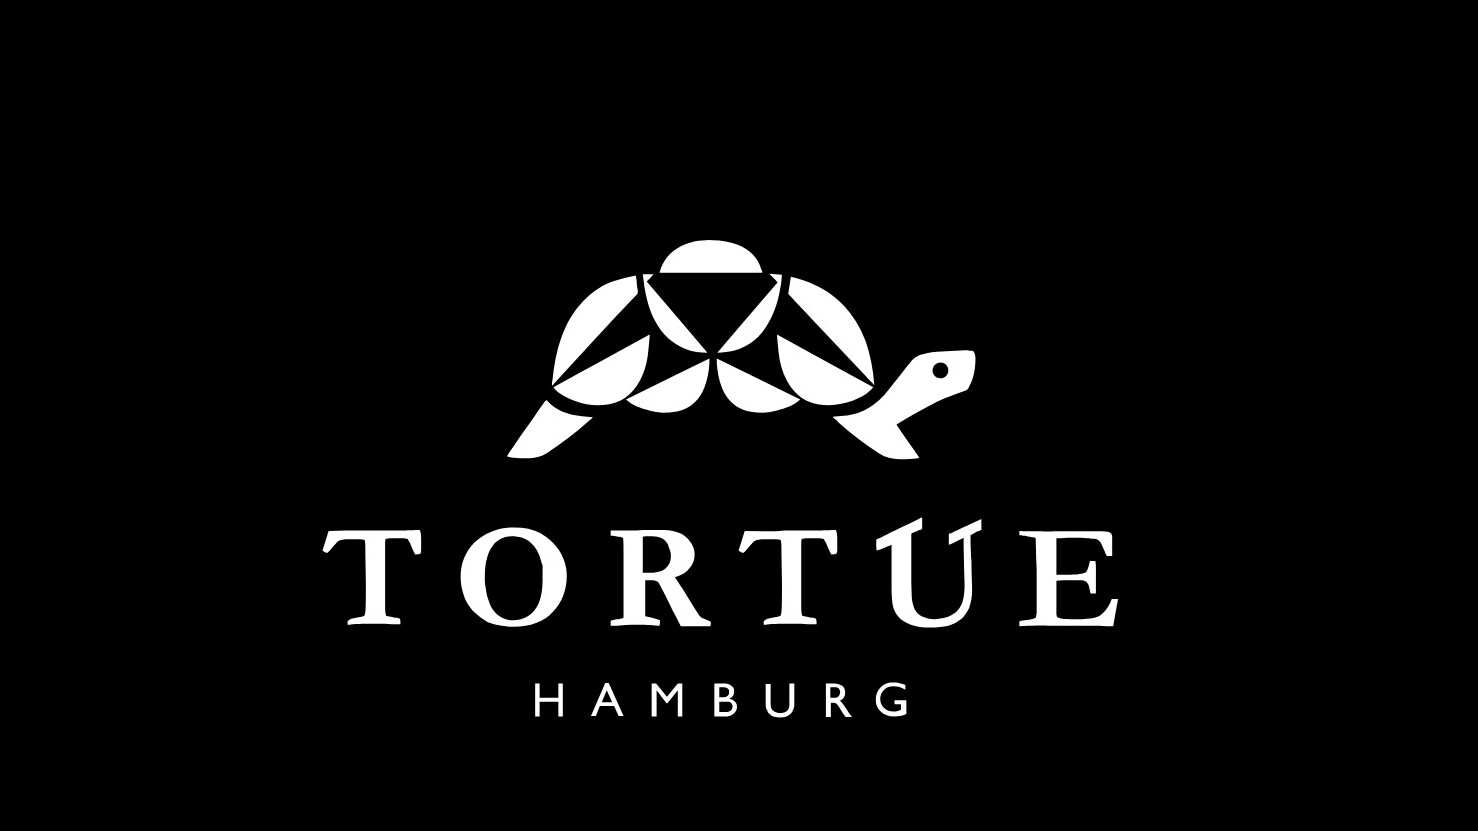 TORTUE HAMBURG Logo schwarz-weiß